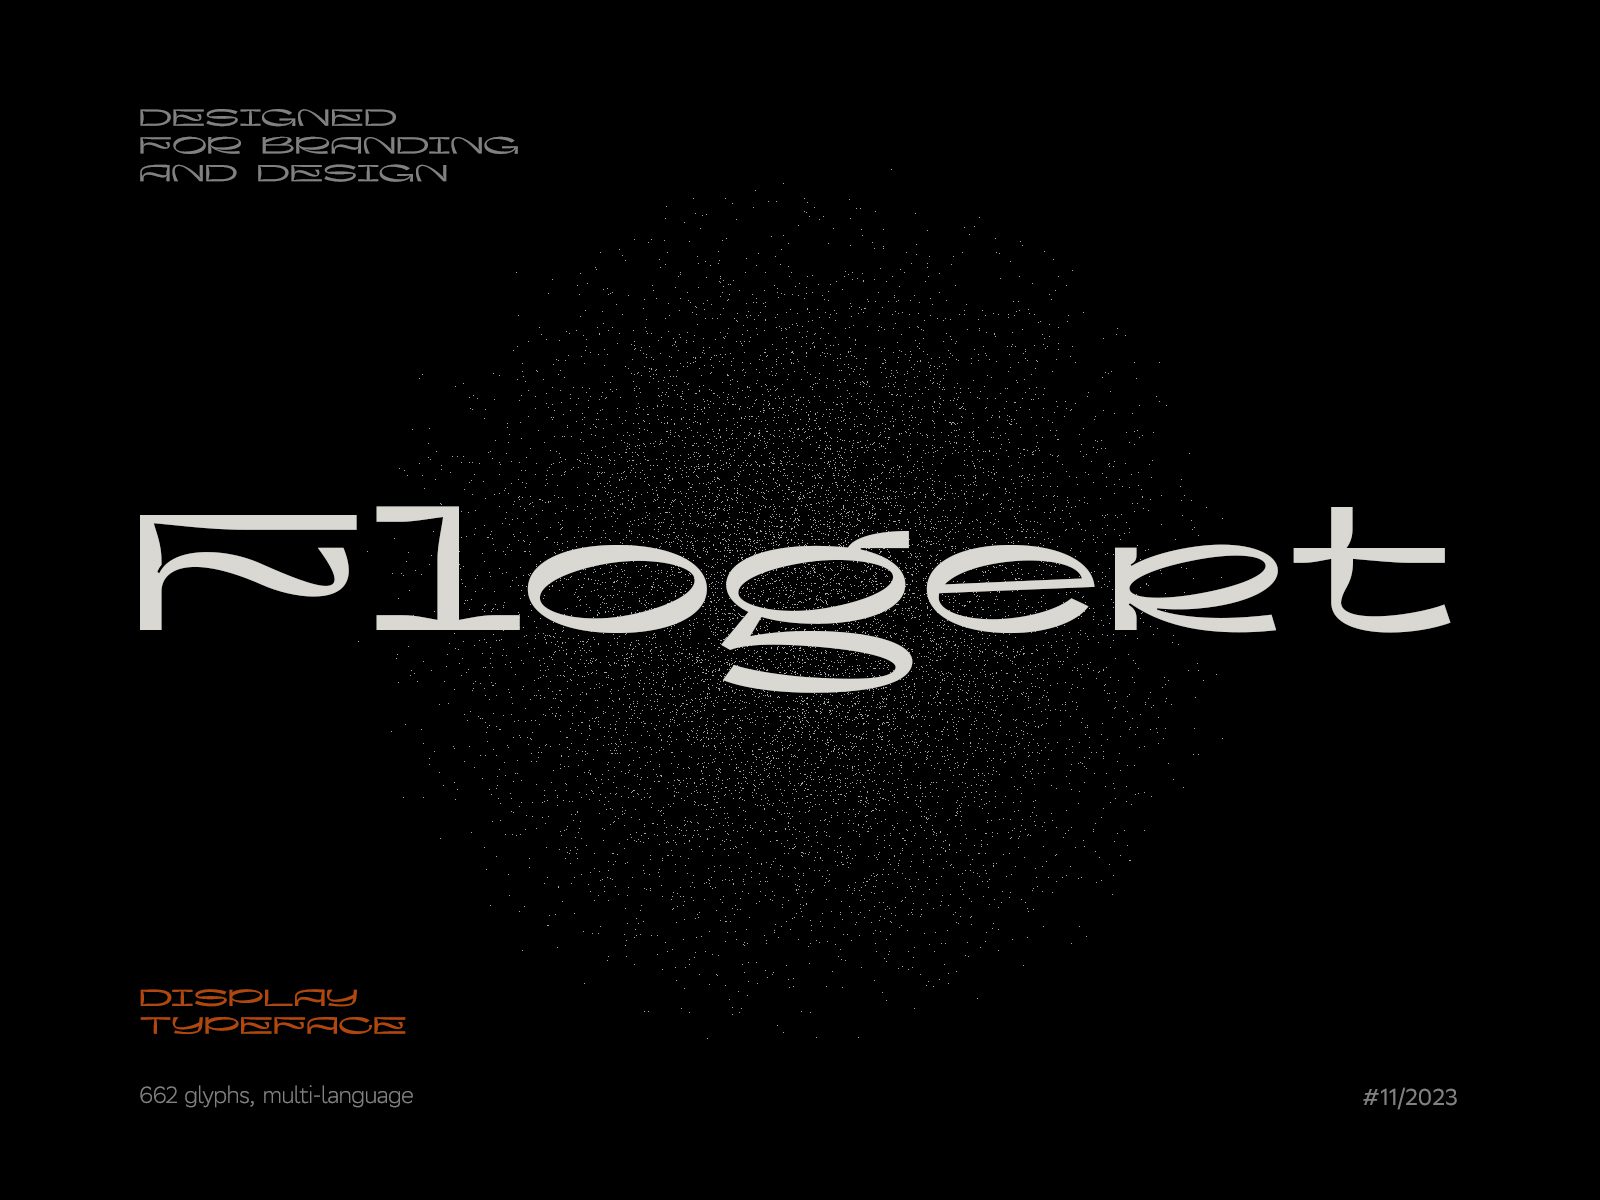 高质量现代酸性艺术抽象图形风格海报杂志排版英文字体 Flogert Display Typeface 设计素材 第1张